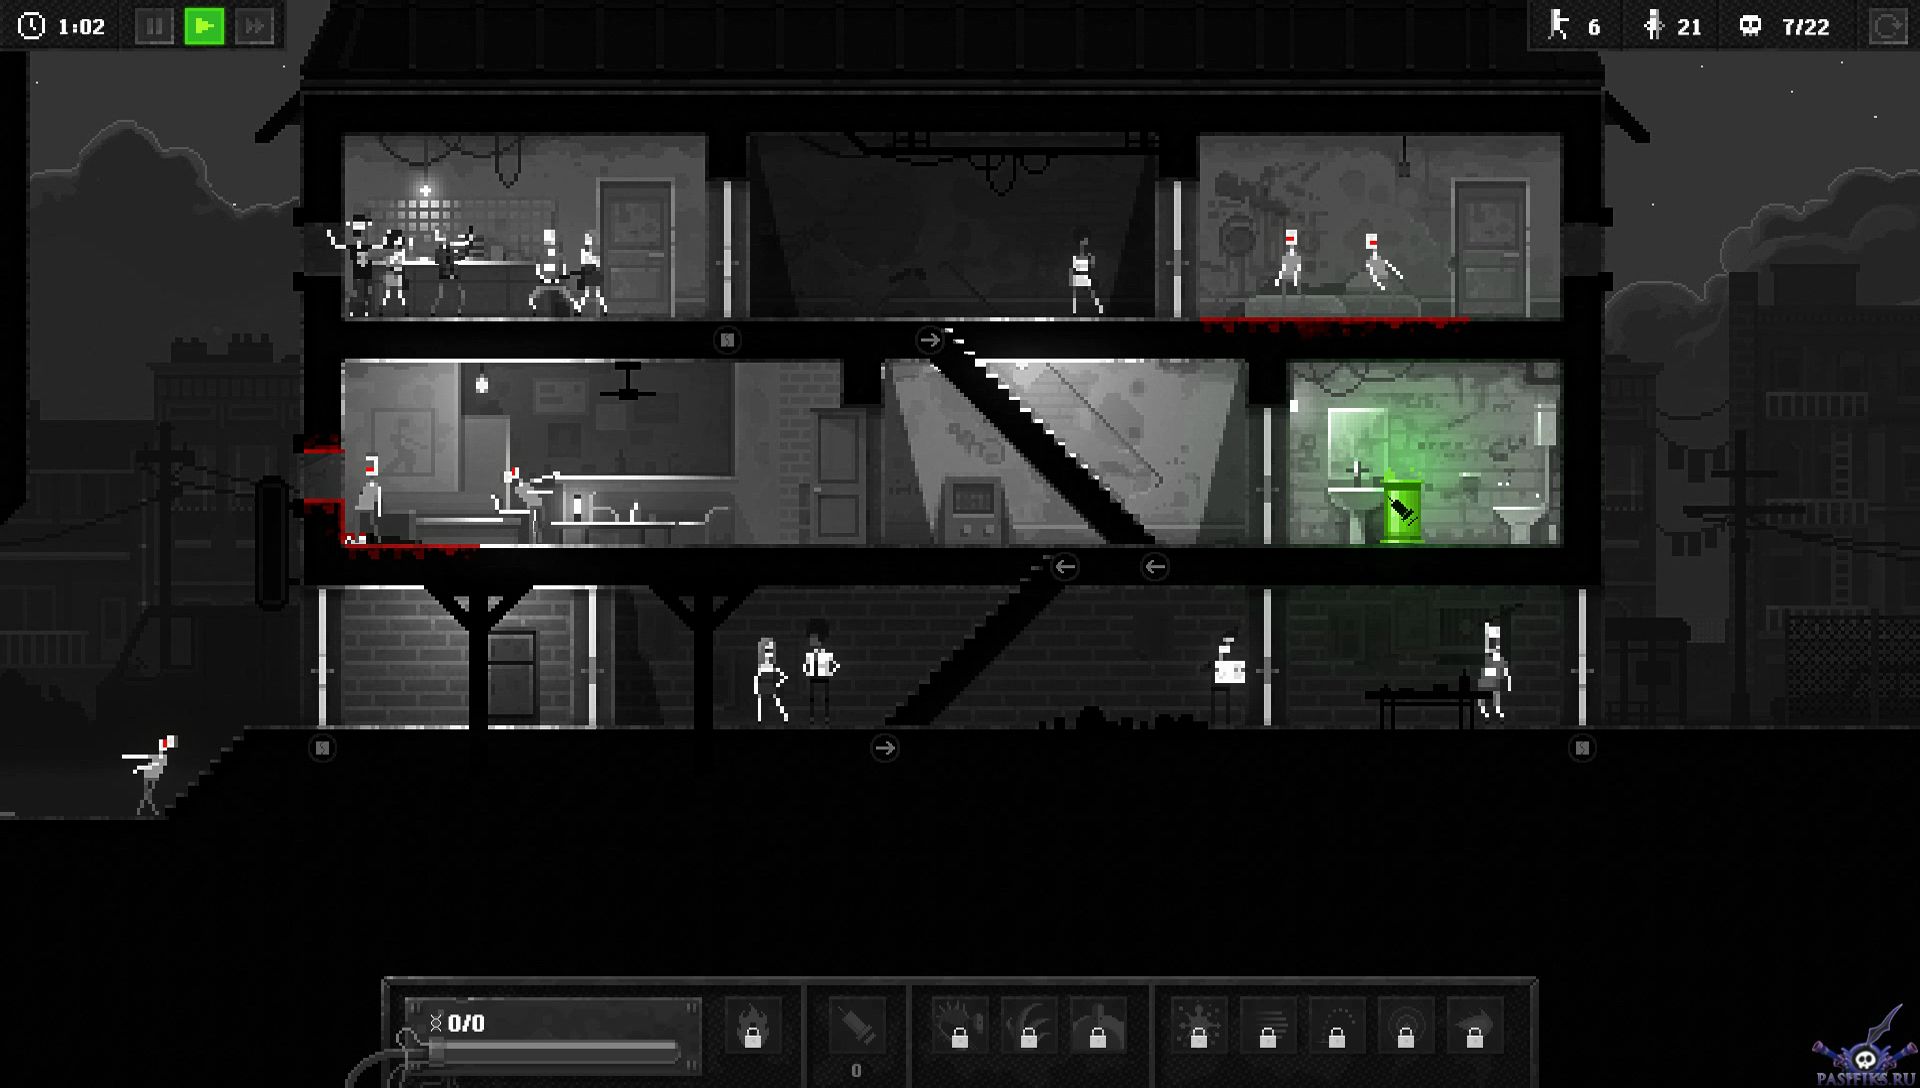 zombie-night-terror-screenshot